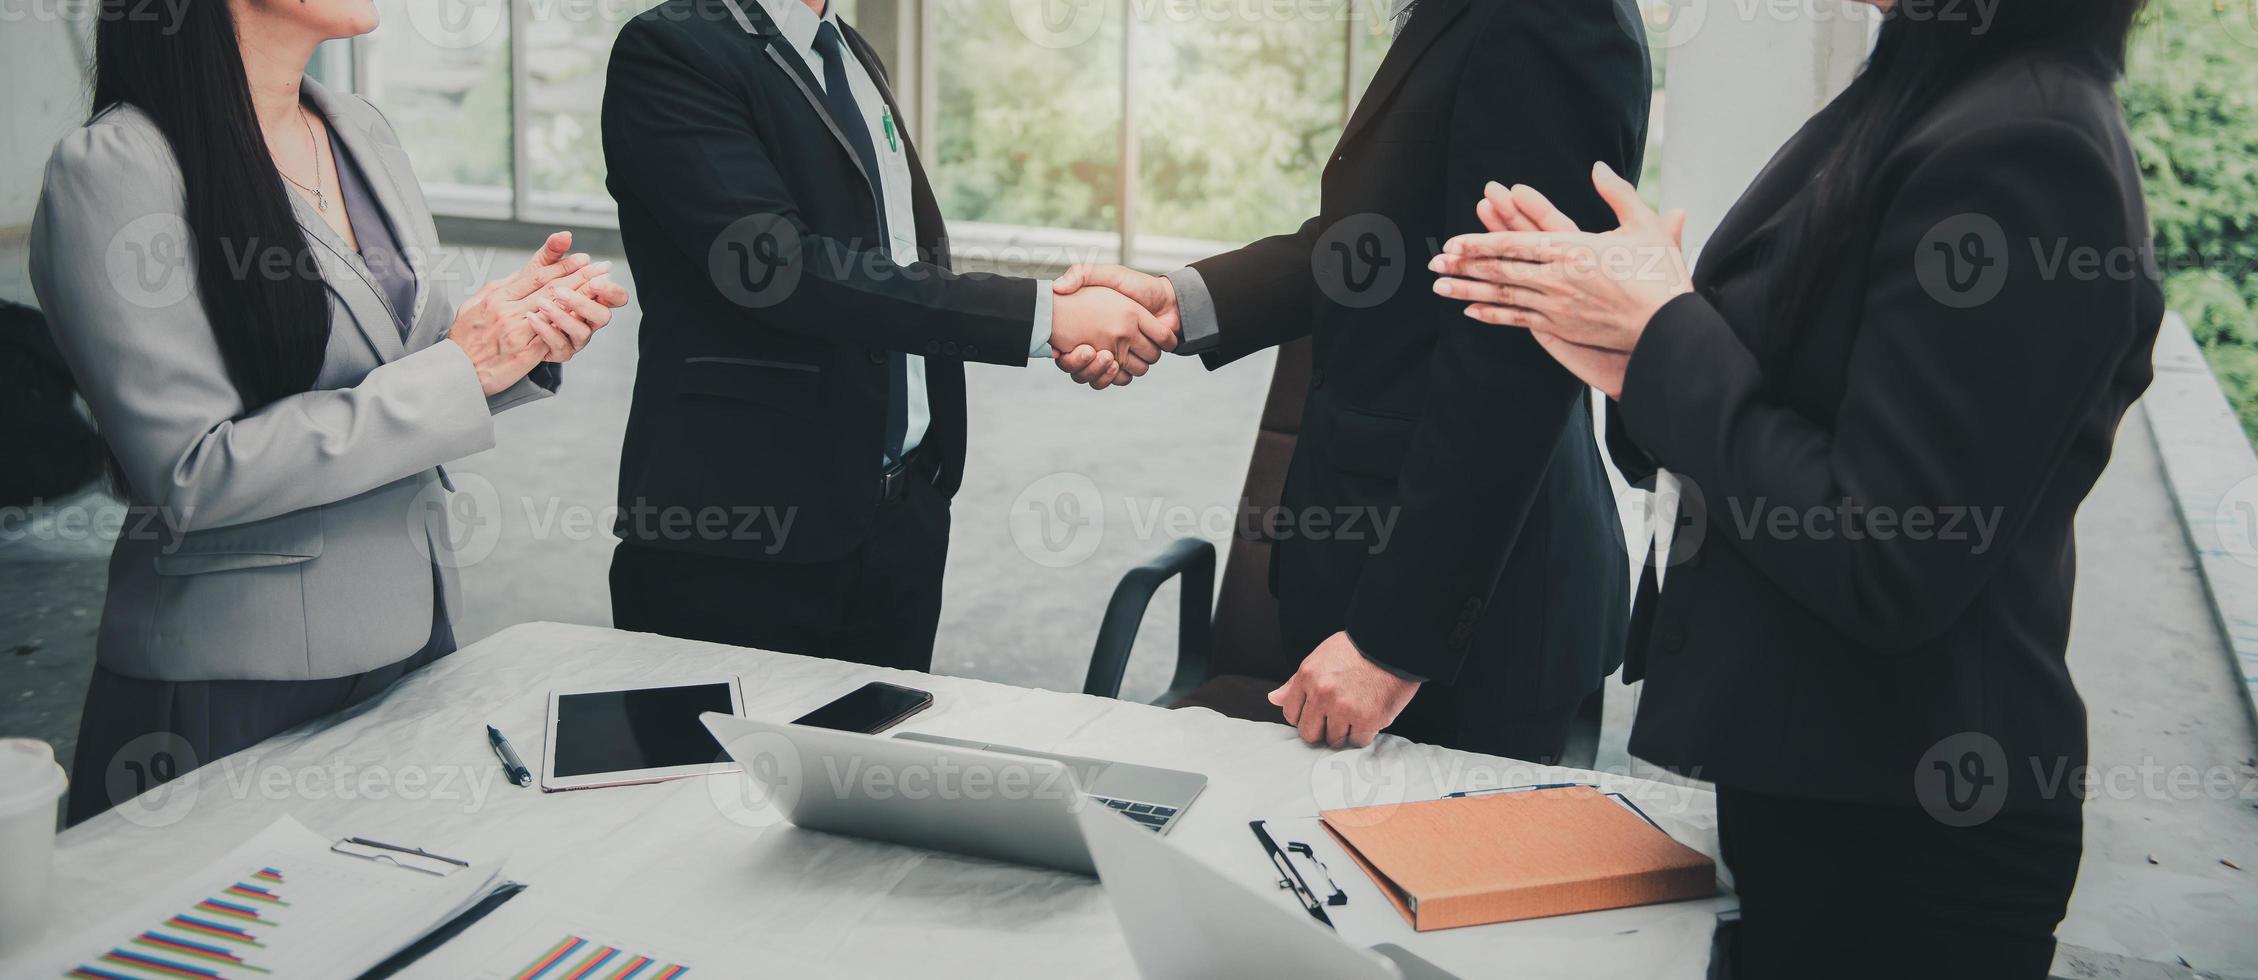 geschäftspartner grüße von geschäftsführern handshake nach der konferenz foto